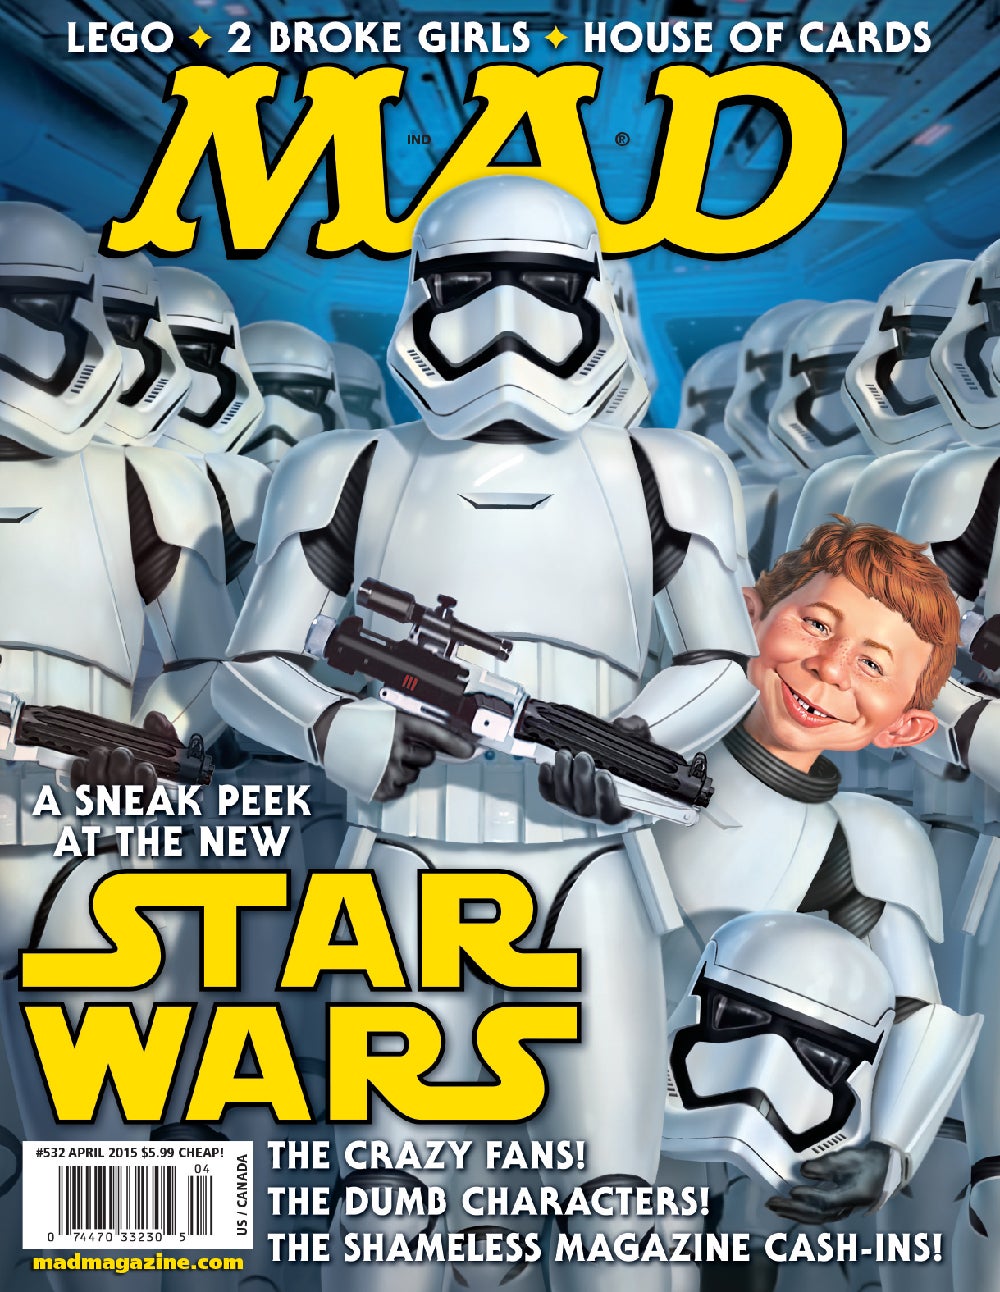 Reductor Paine Gillic Doblez Mad magazine, Star wars episodes, Star wars episode vii